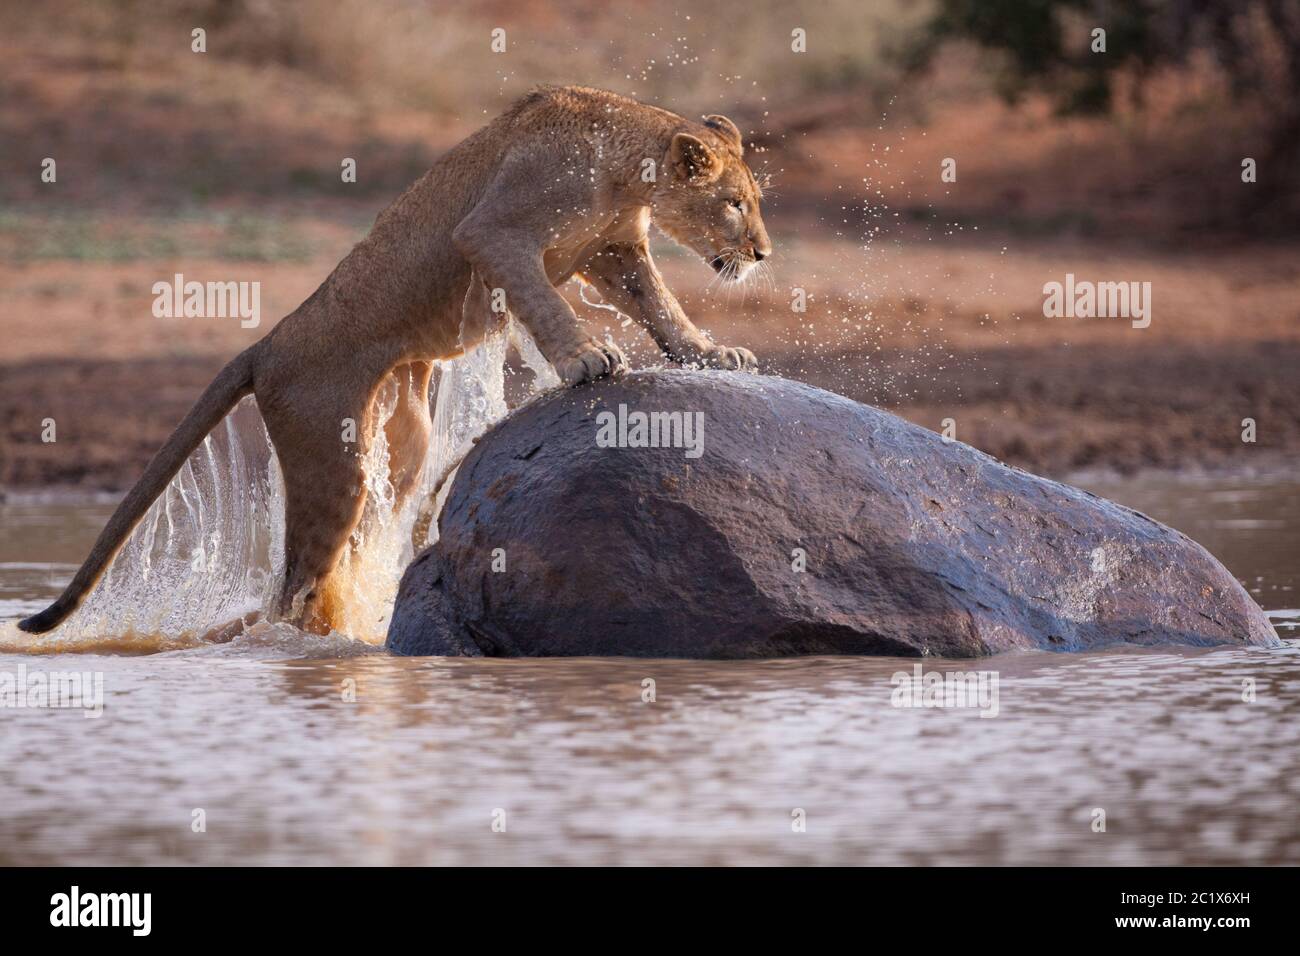 Eine Erwachsene Löwin springt aus dem Wasser zu einem großen Felsen, wobei Wasser im goldenen Nachmittagslicht vom Körper tropft Stockfoto